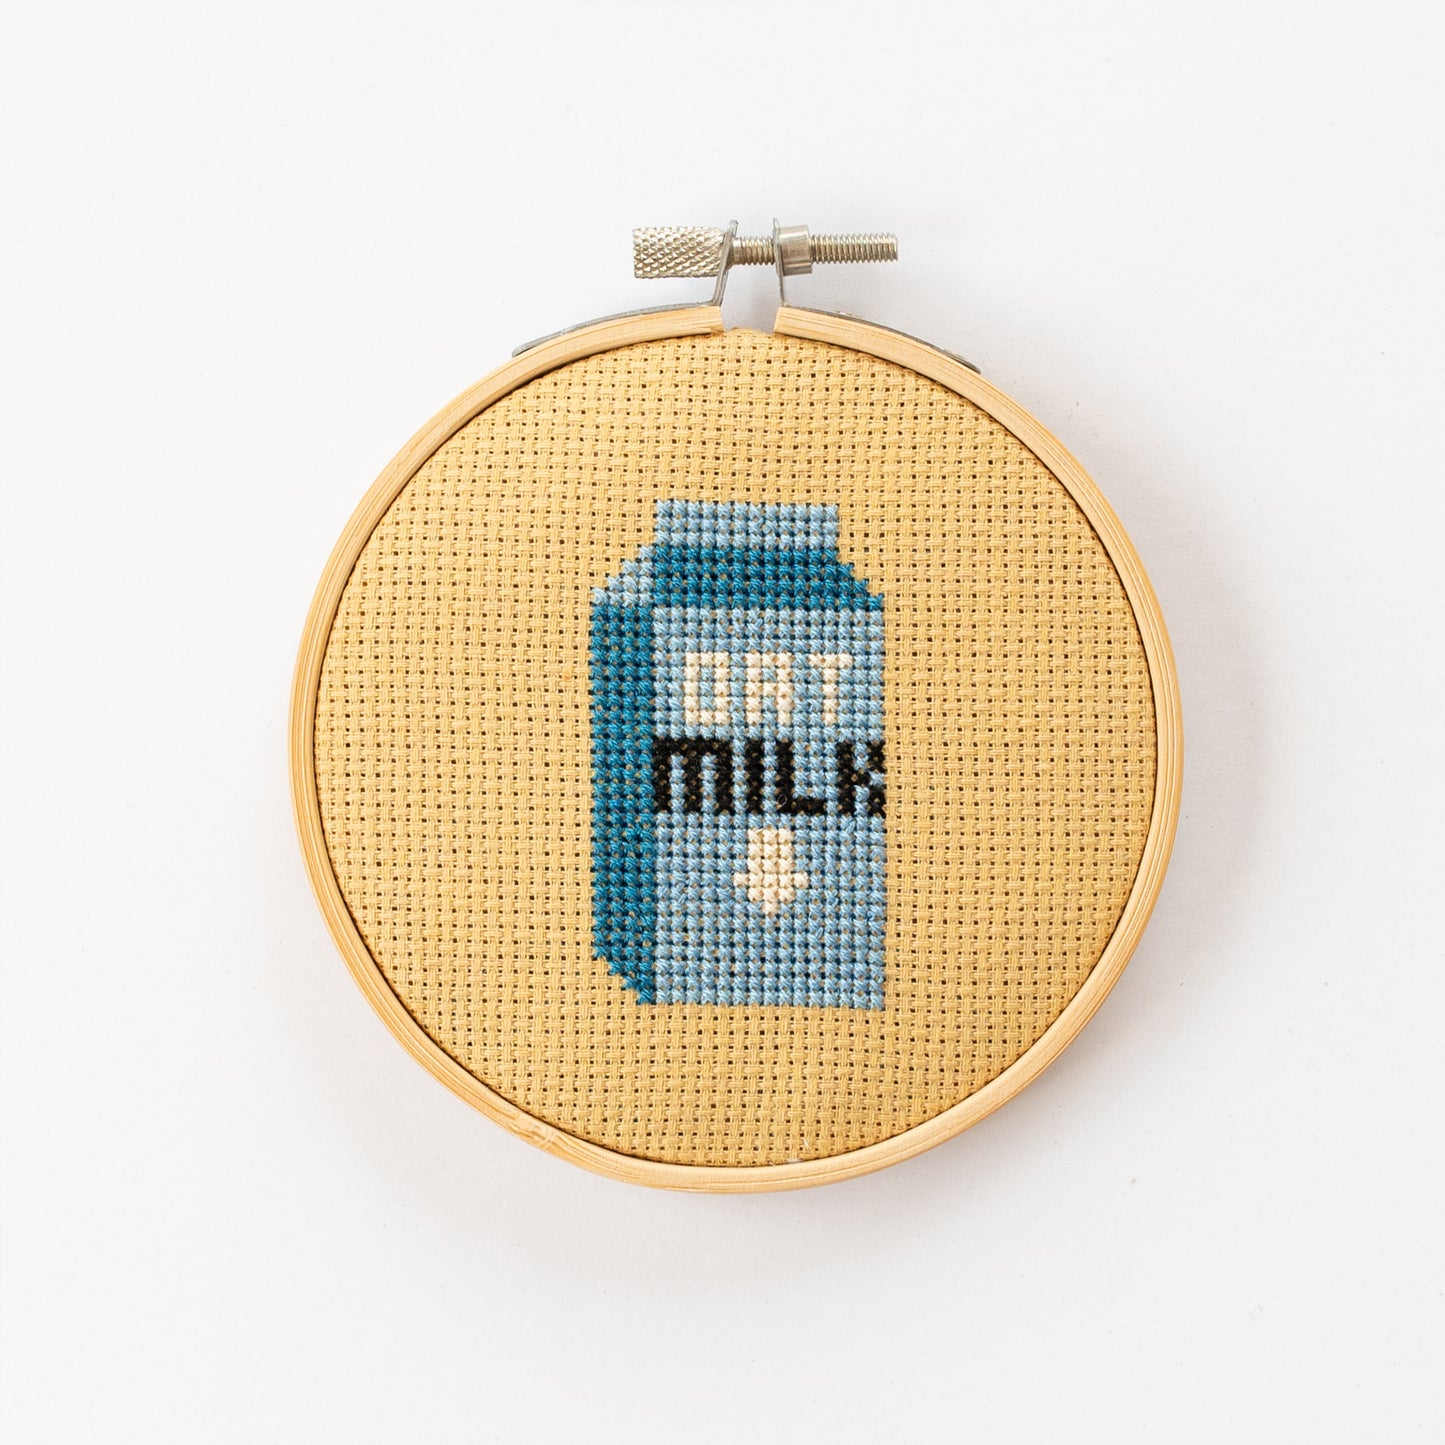 Cotton Clara Oat Milk Mini Cross Stitch Kit